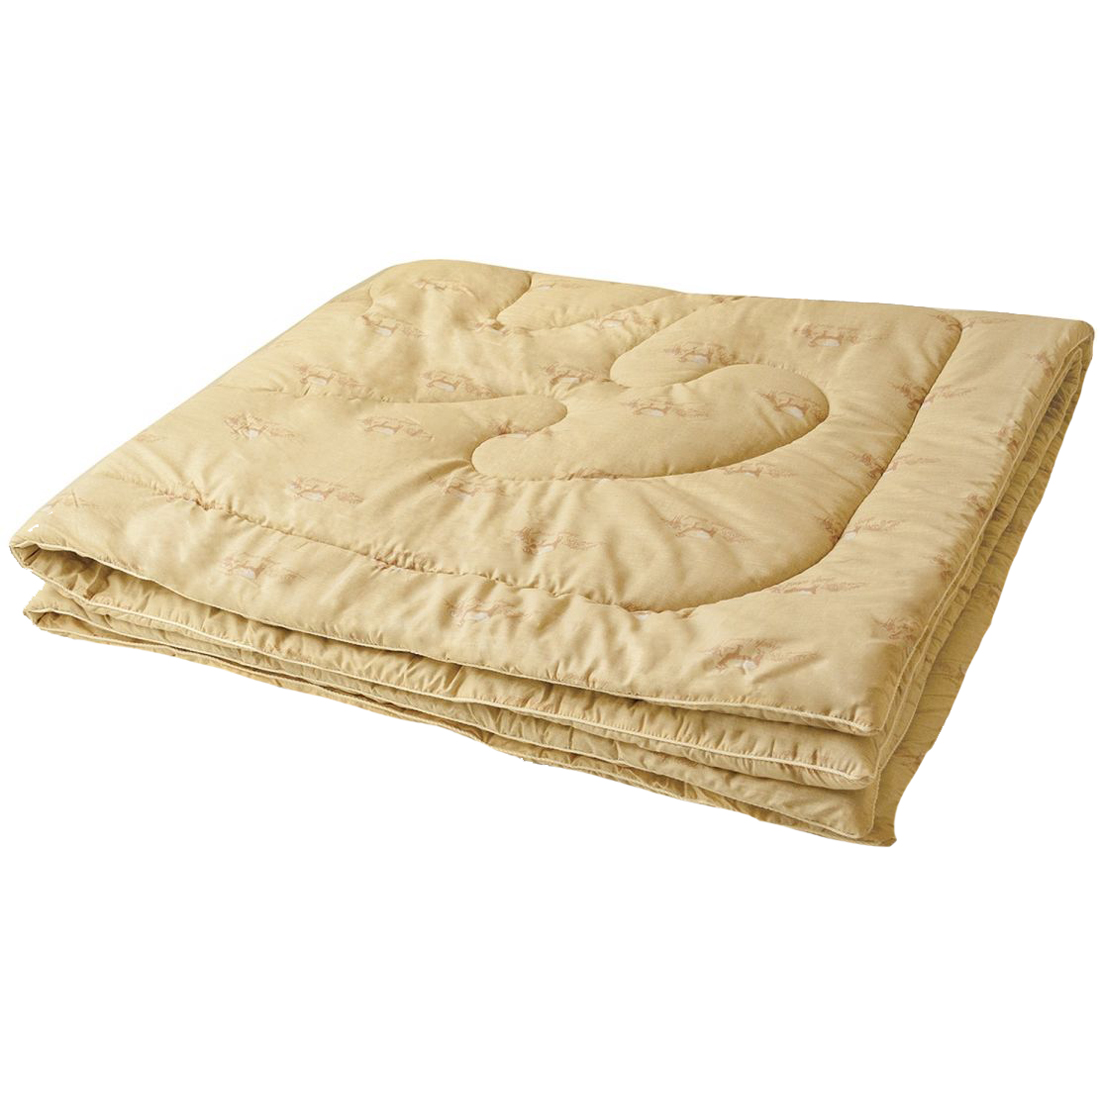 Одеяло из овечьей шерсти «Руно», размер 200х220 см.